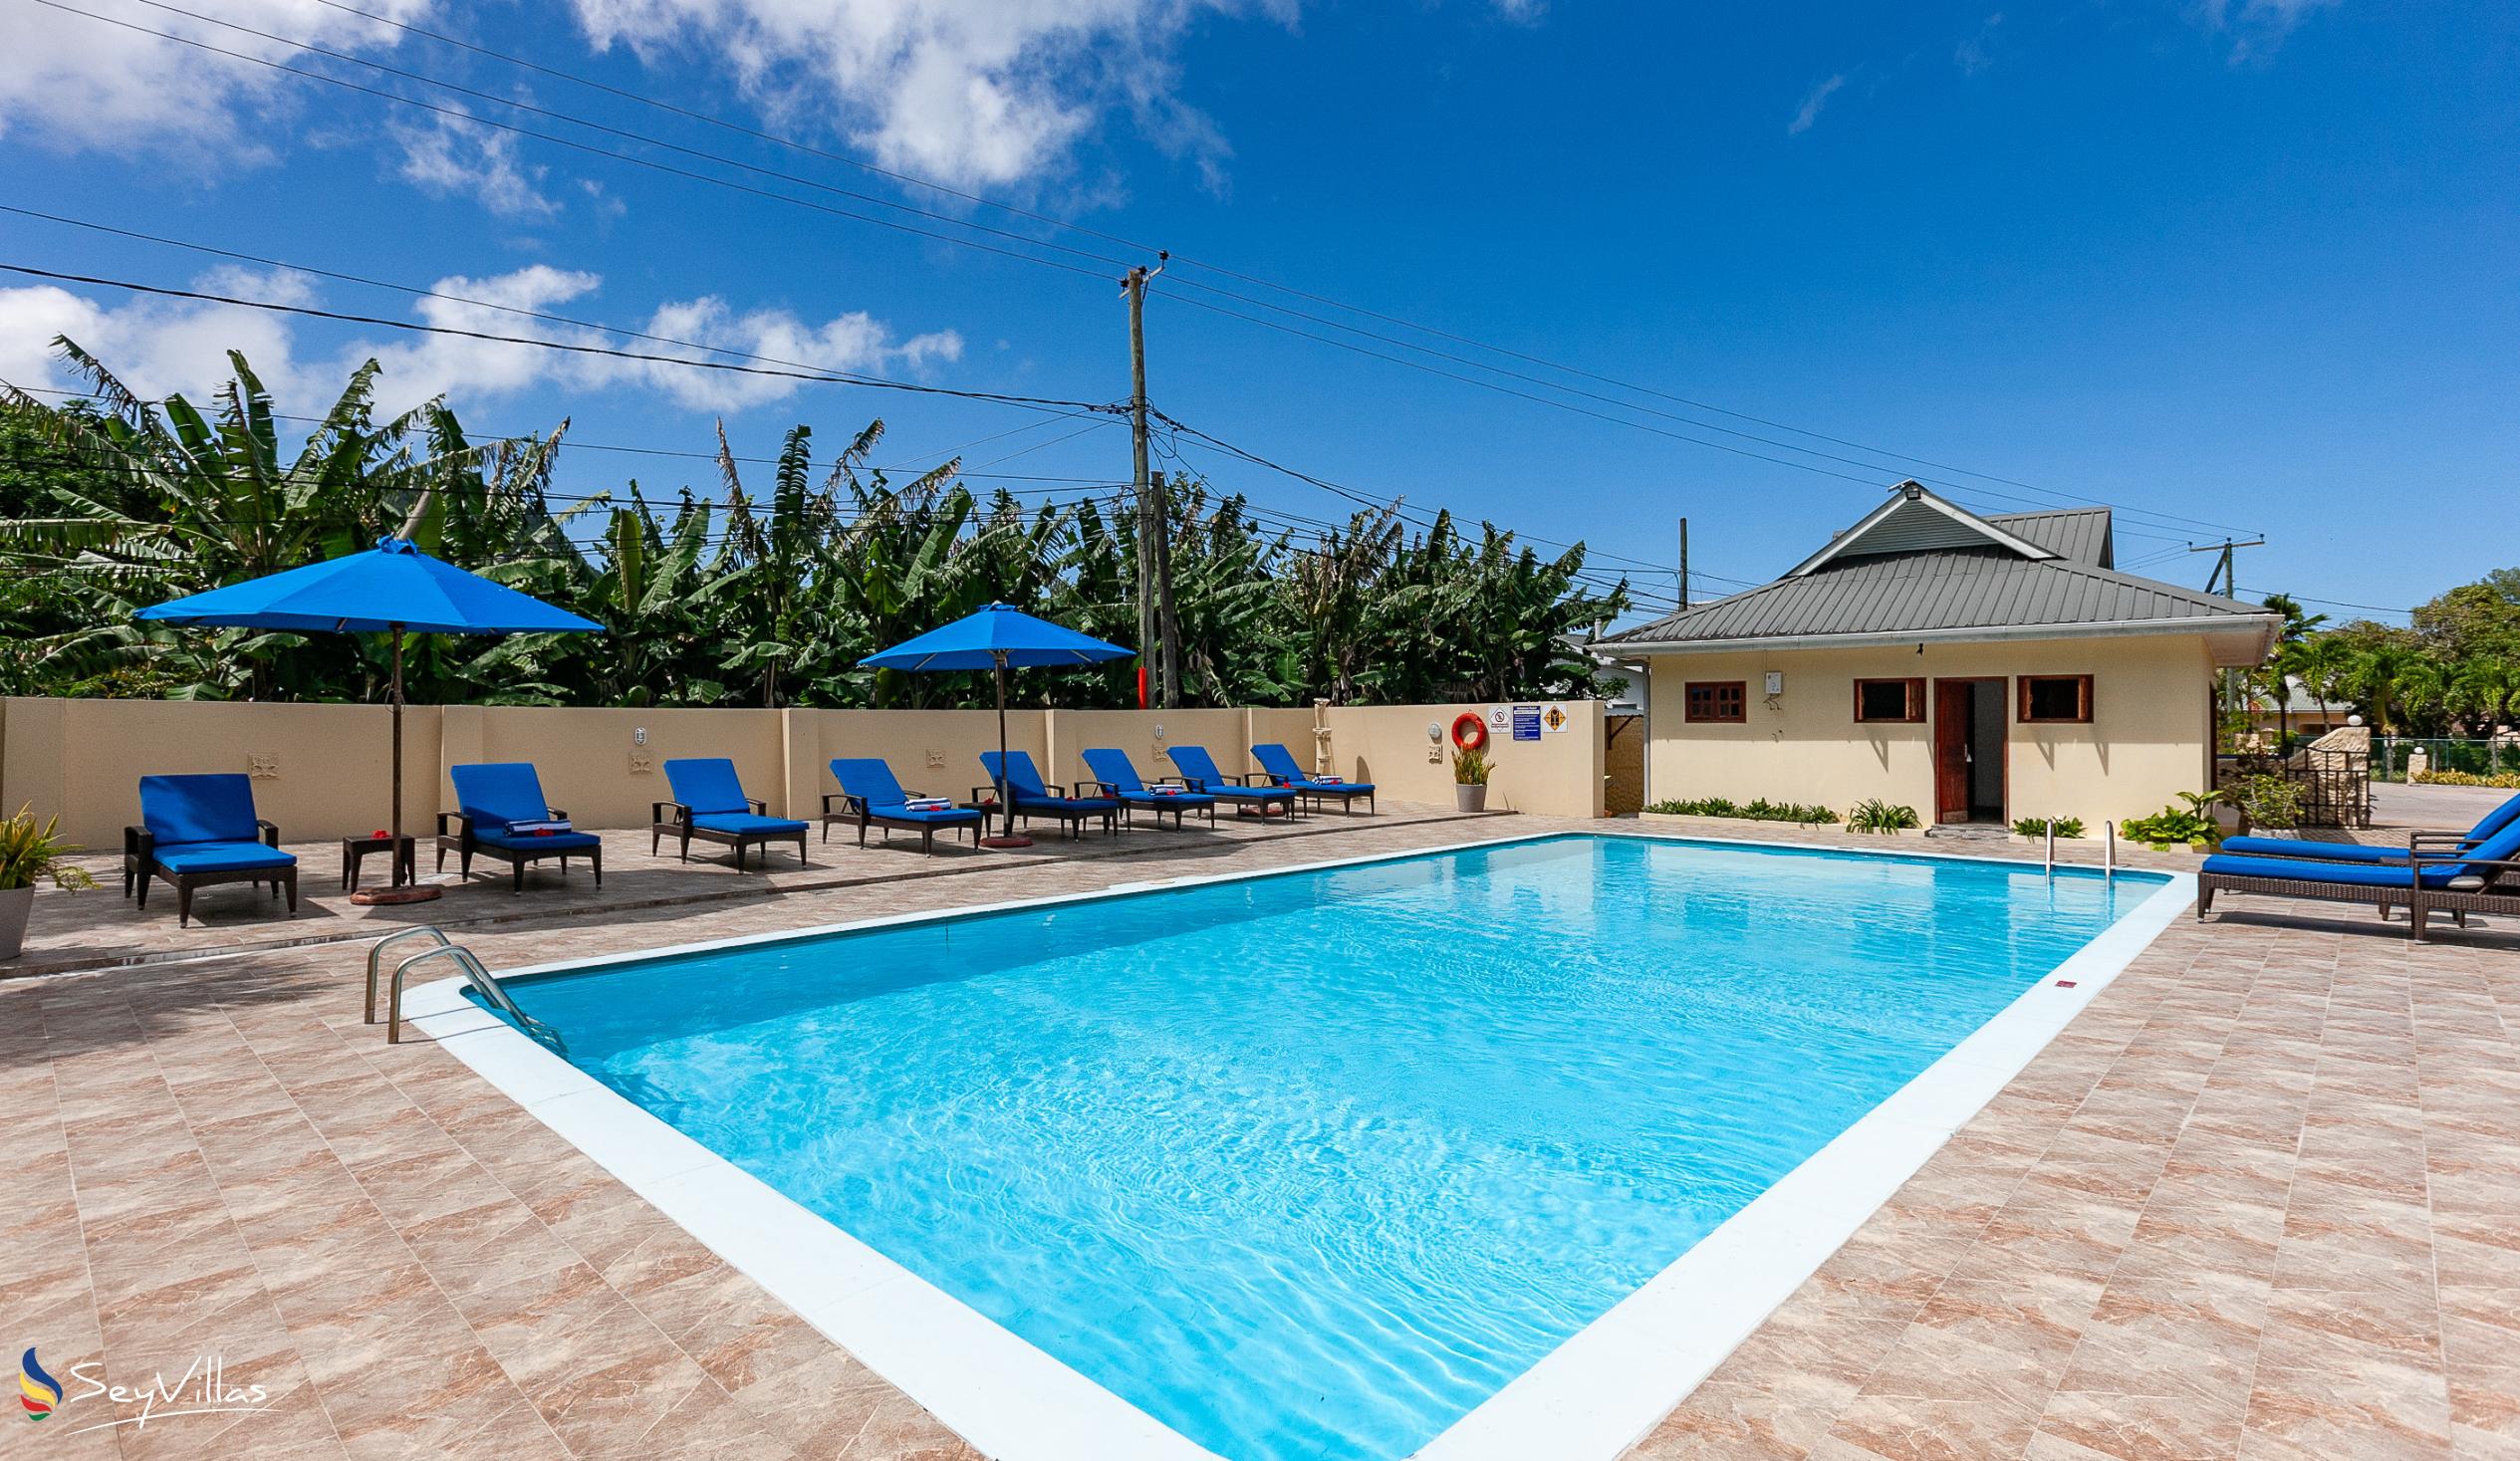 Foto 7: Britannia Hotel - Aussenbereich - Praslin (Seychellen)